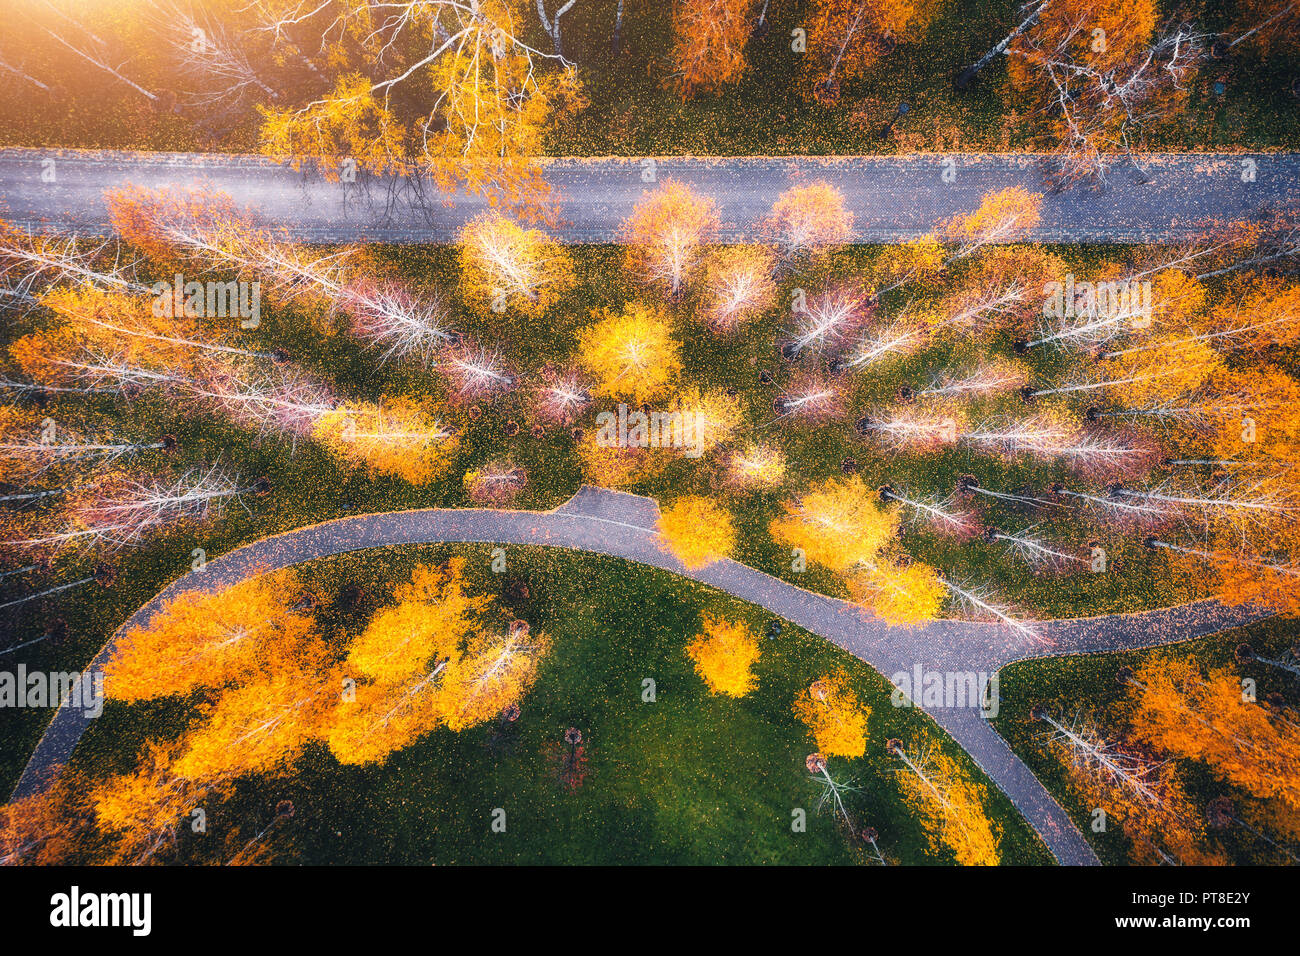 Vista aerea del fantastico parco di autunno in europa in serata. Paesaggio con alberi con foglie di giallo, campo con erba verde e percorsi per l'autunno. Scener Foto Stock